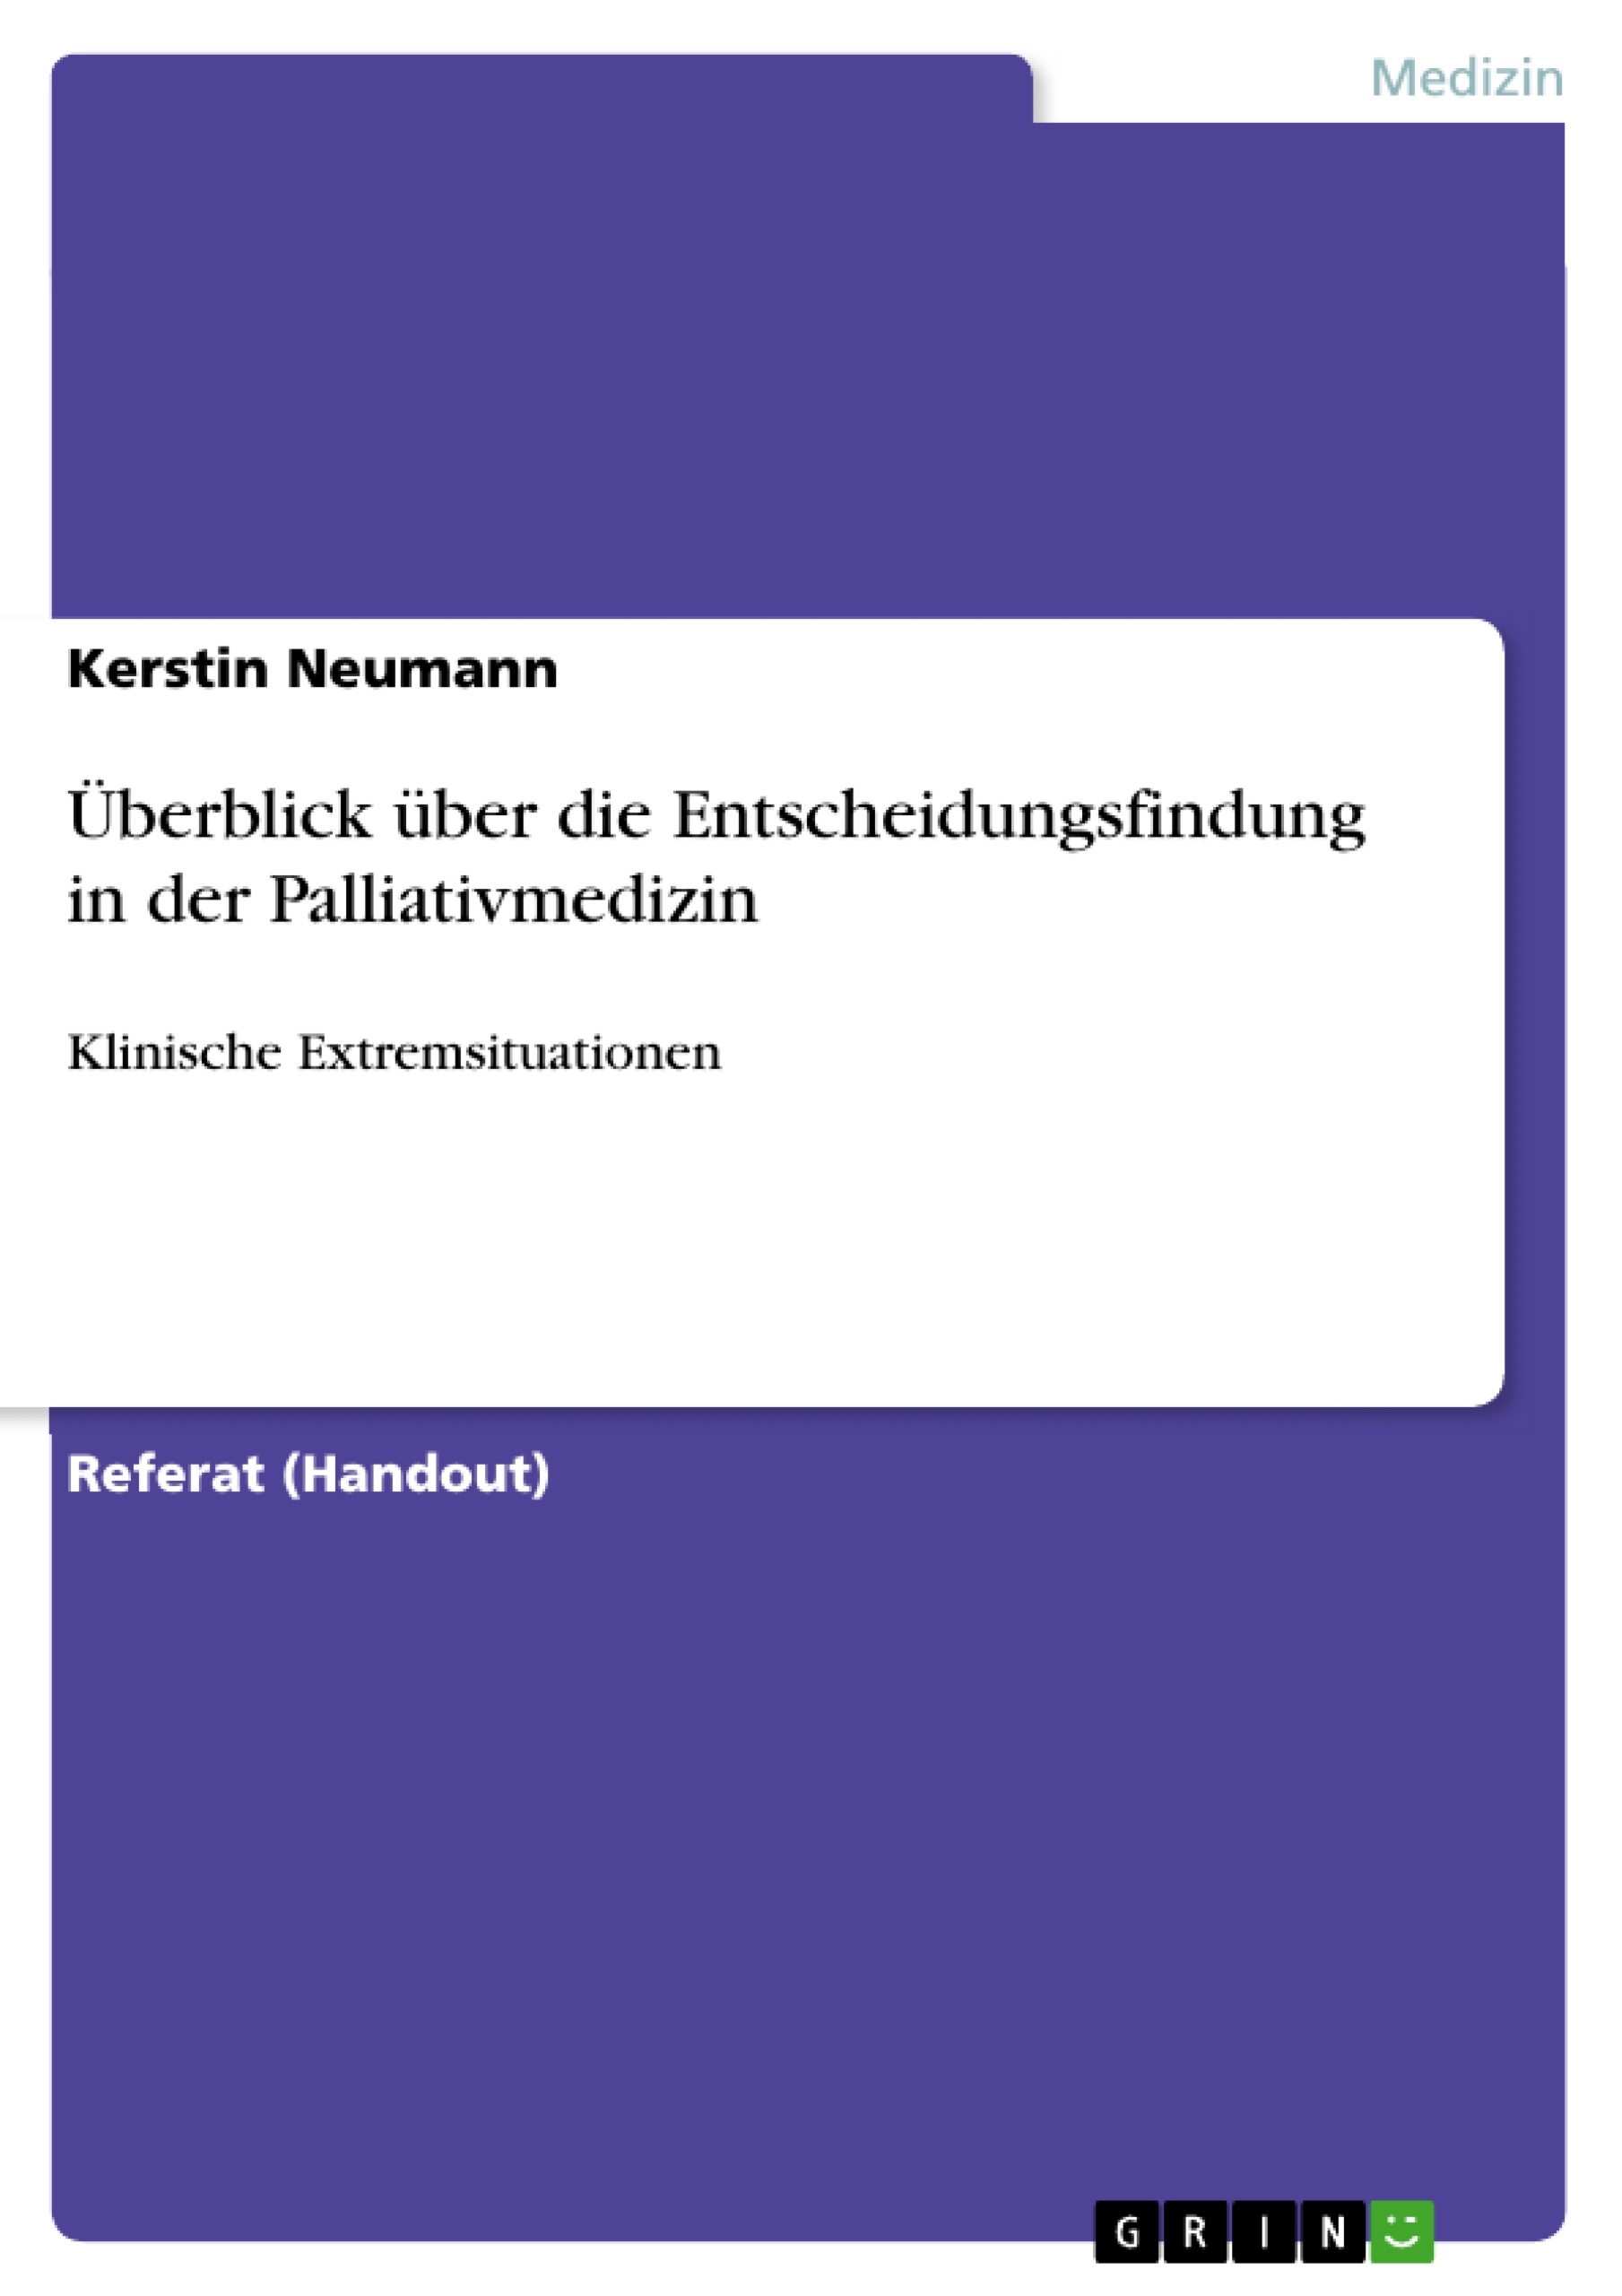 Title: Überblick über die Entscheidungsfindung in der Palliativmedizin